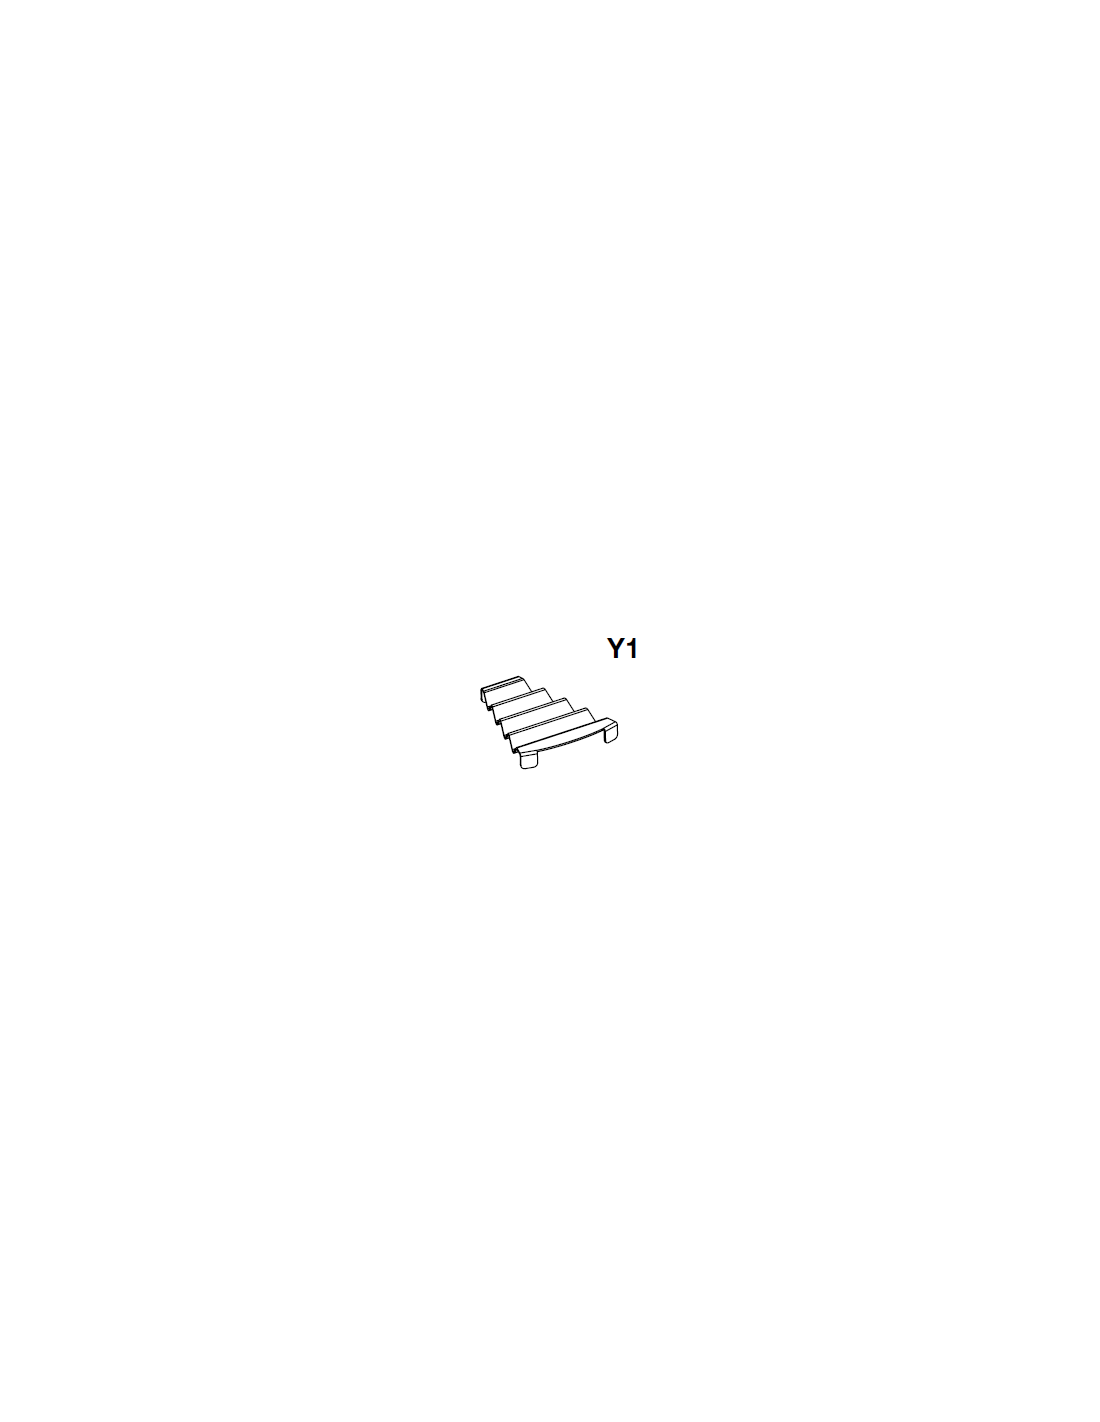 Accessorio in metacrilato trasparente sagomato a gradinata per esporre le praline (da inserire nel vassoio Y)